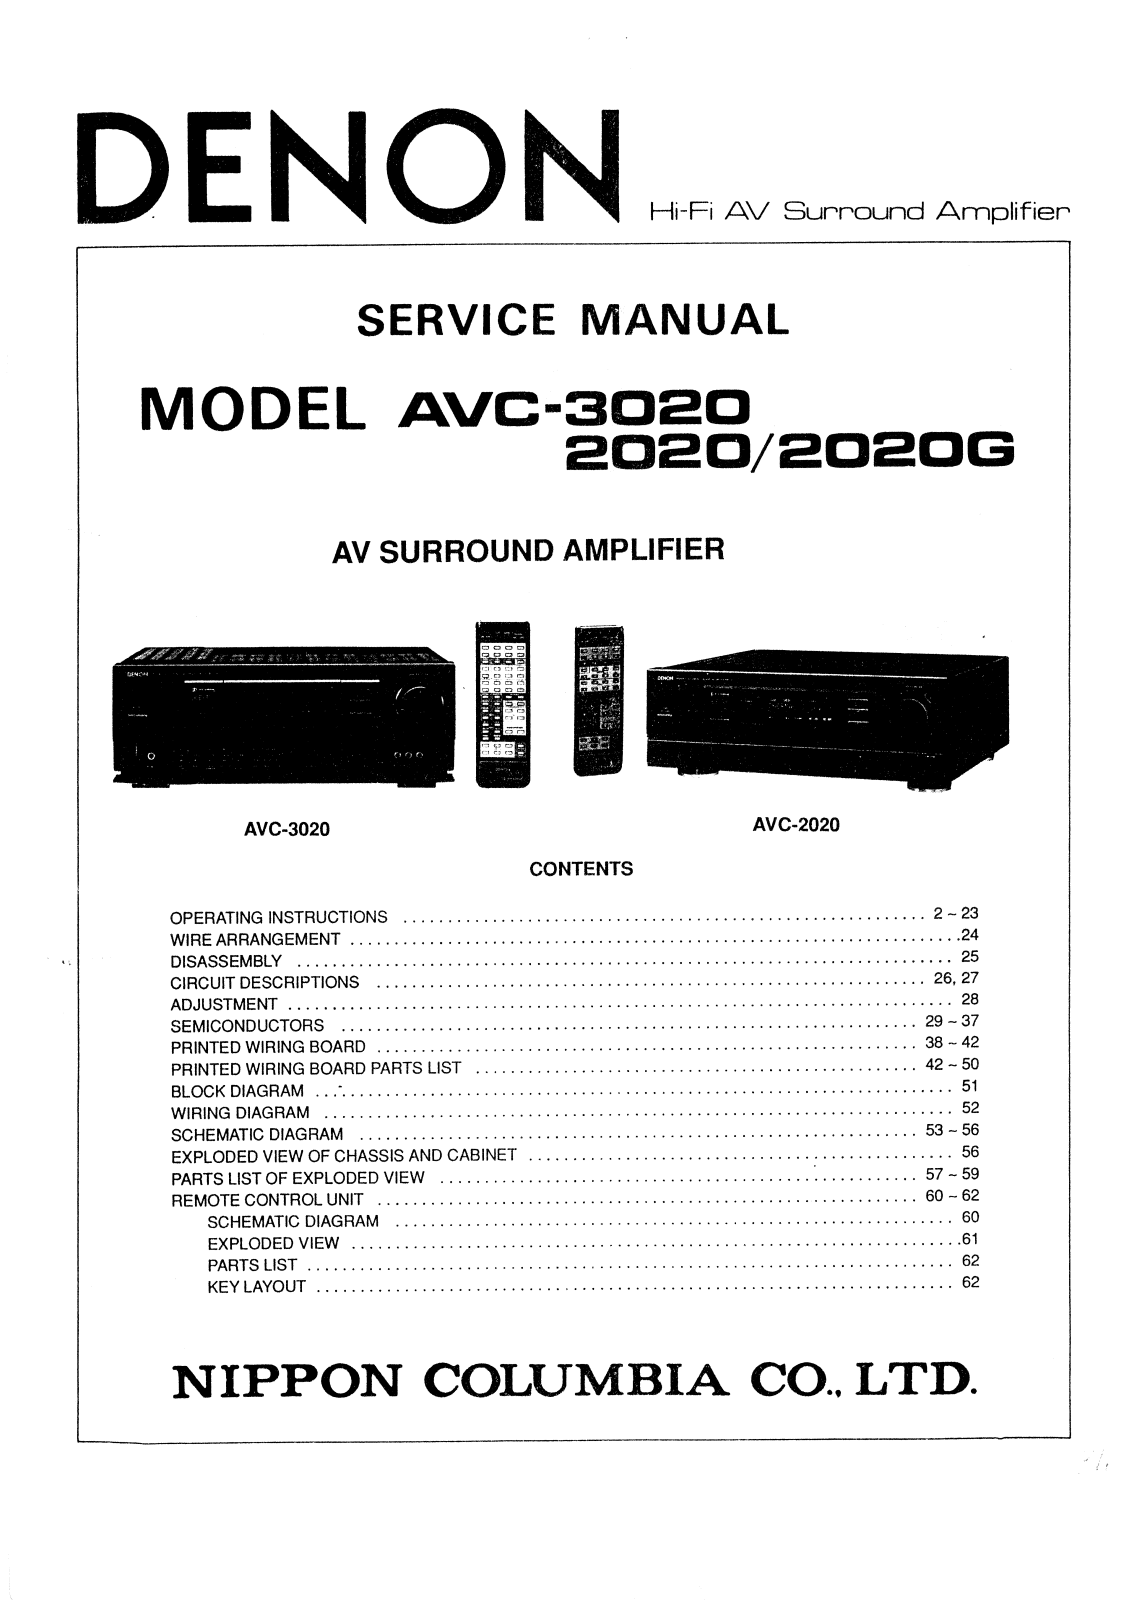 Denon AVC-2020, AVC-3020 Service Manual